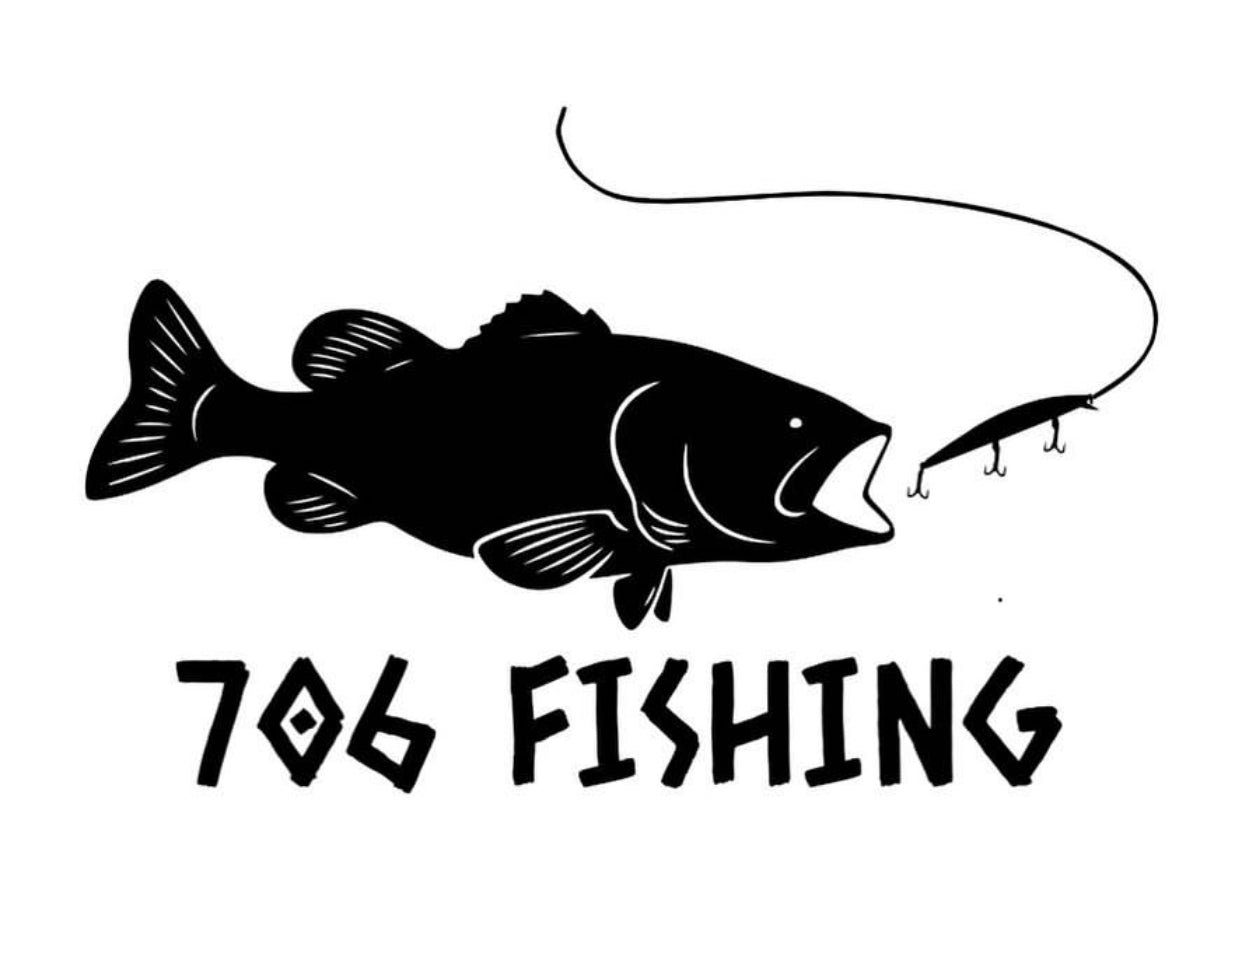 706 Fishing